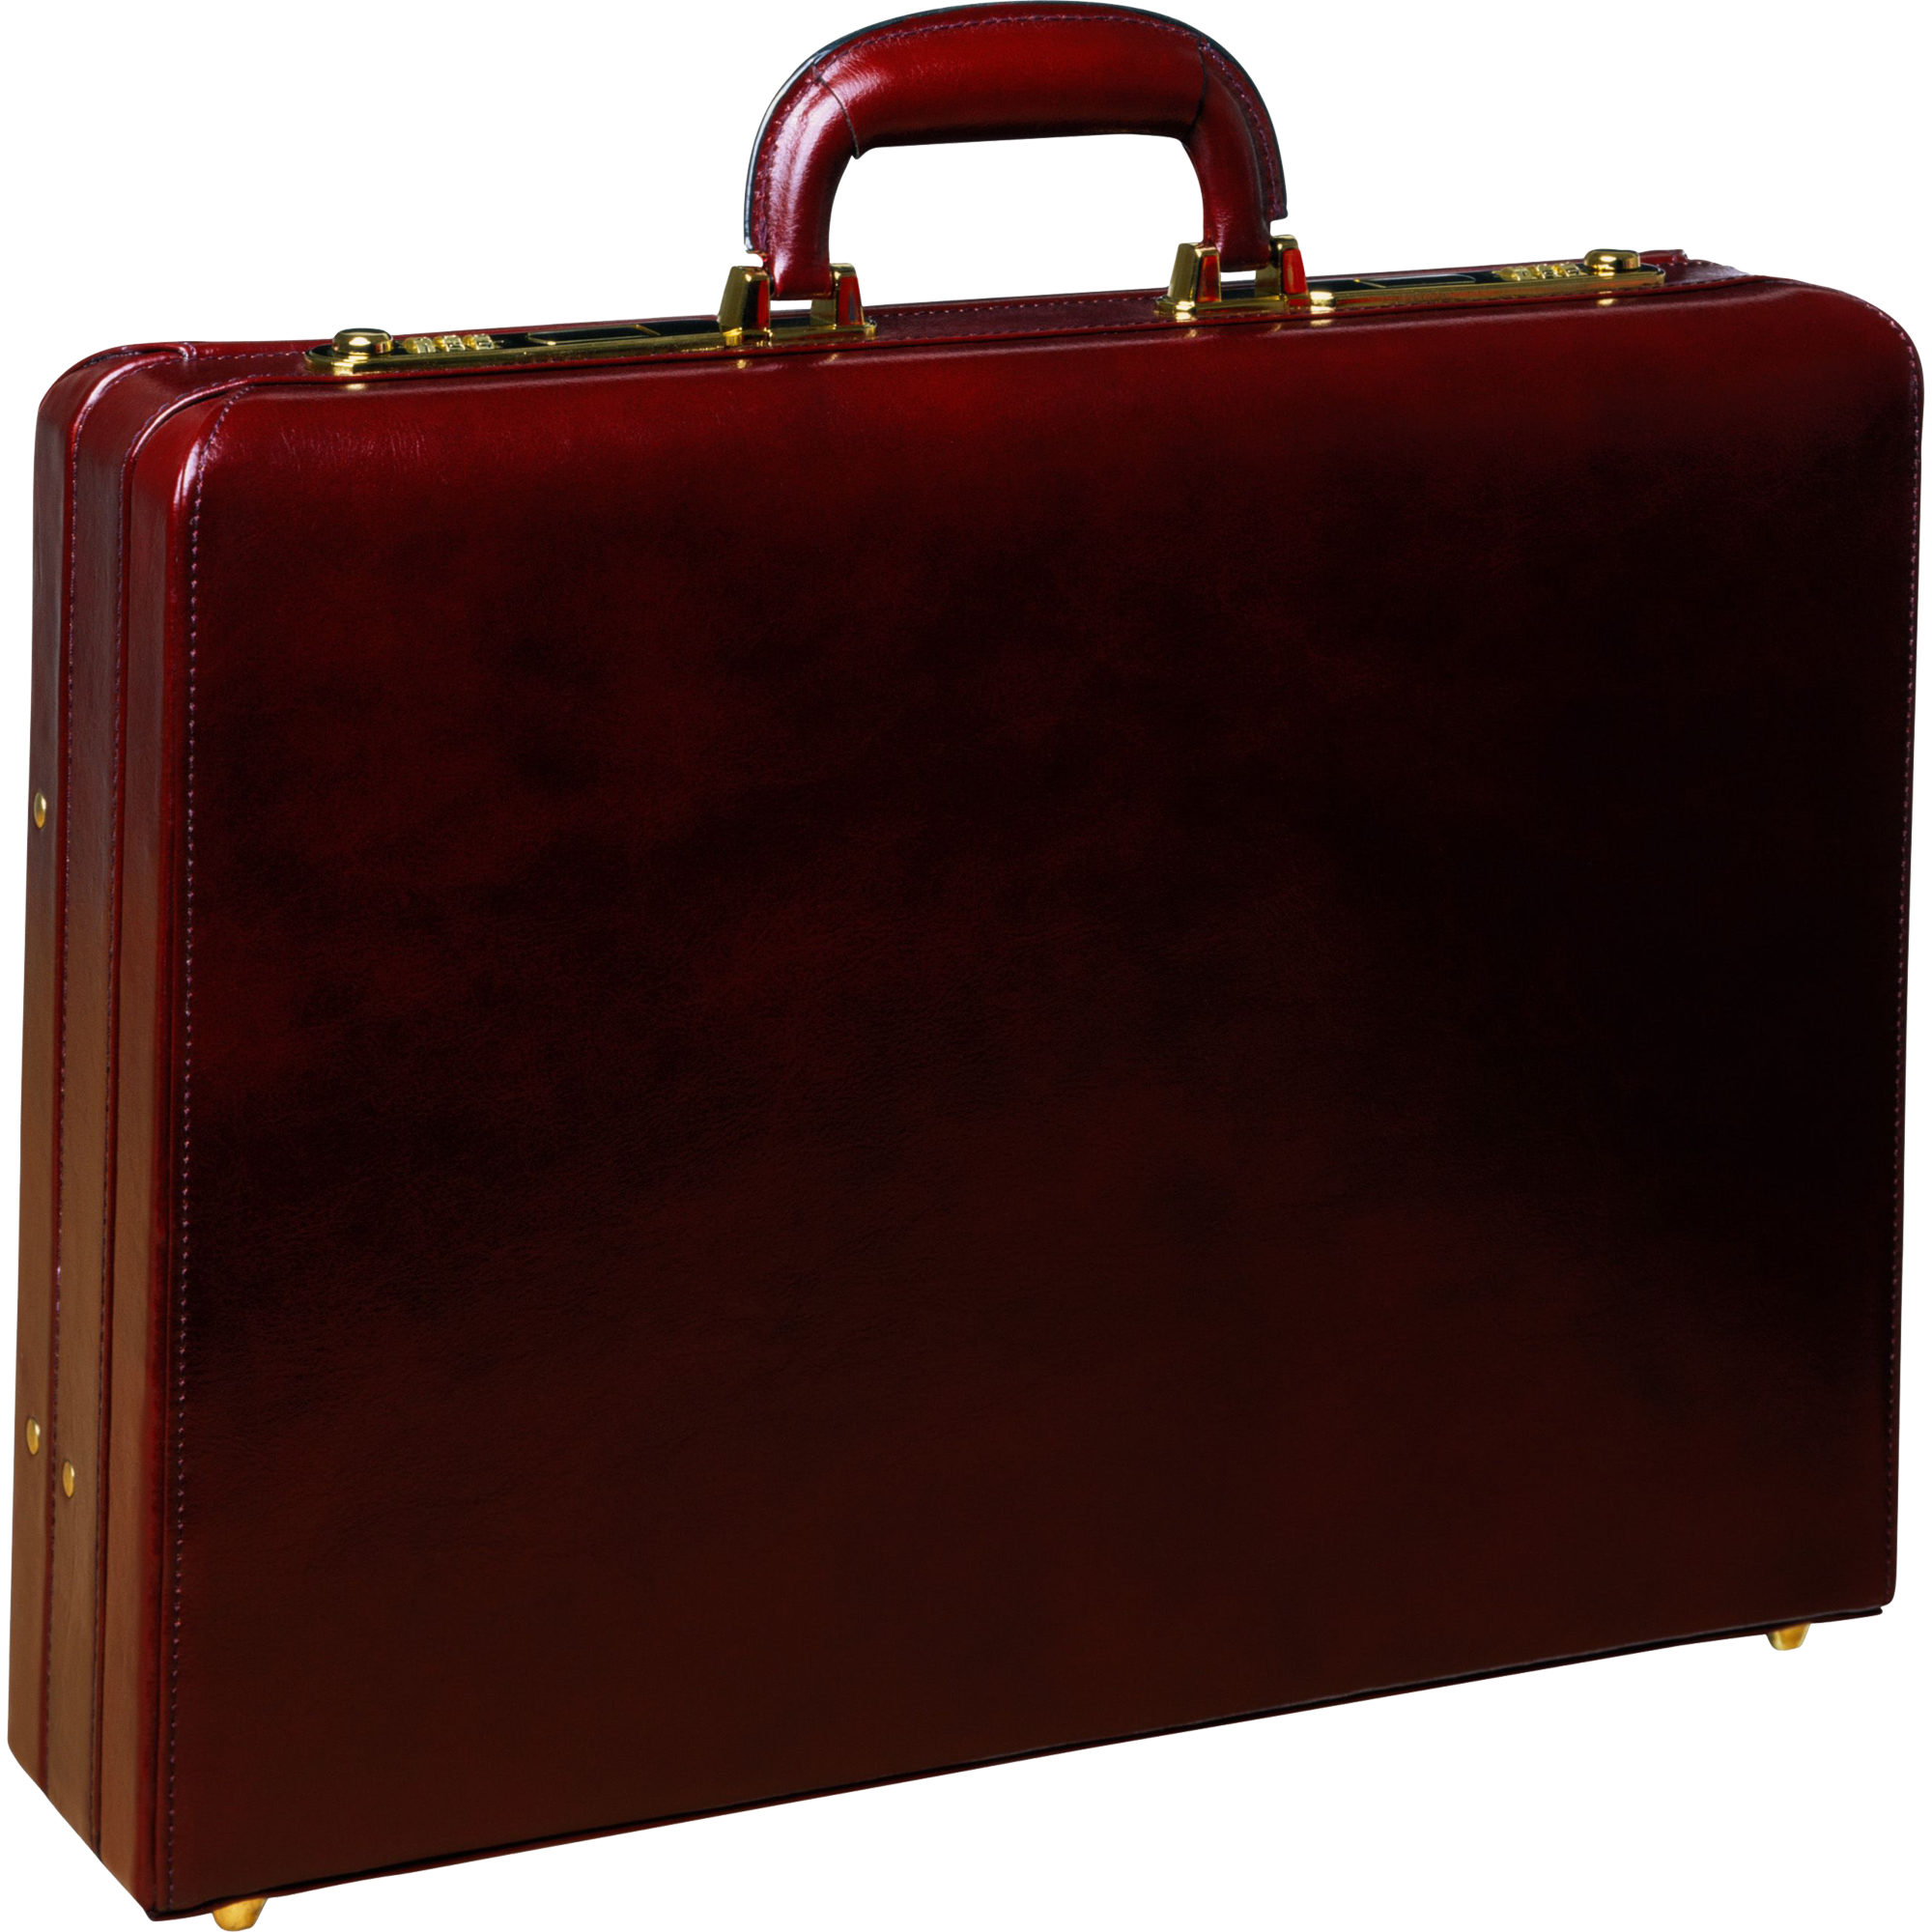 Suitcase  Transparent Image